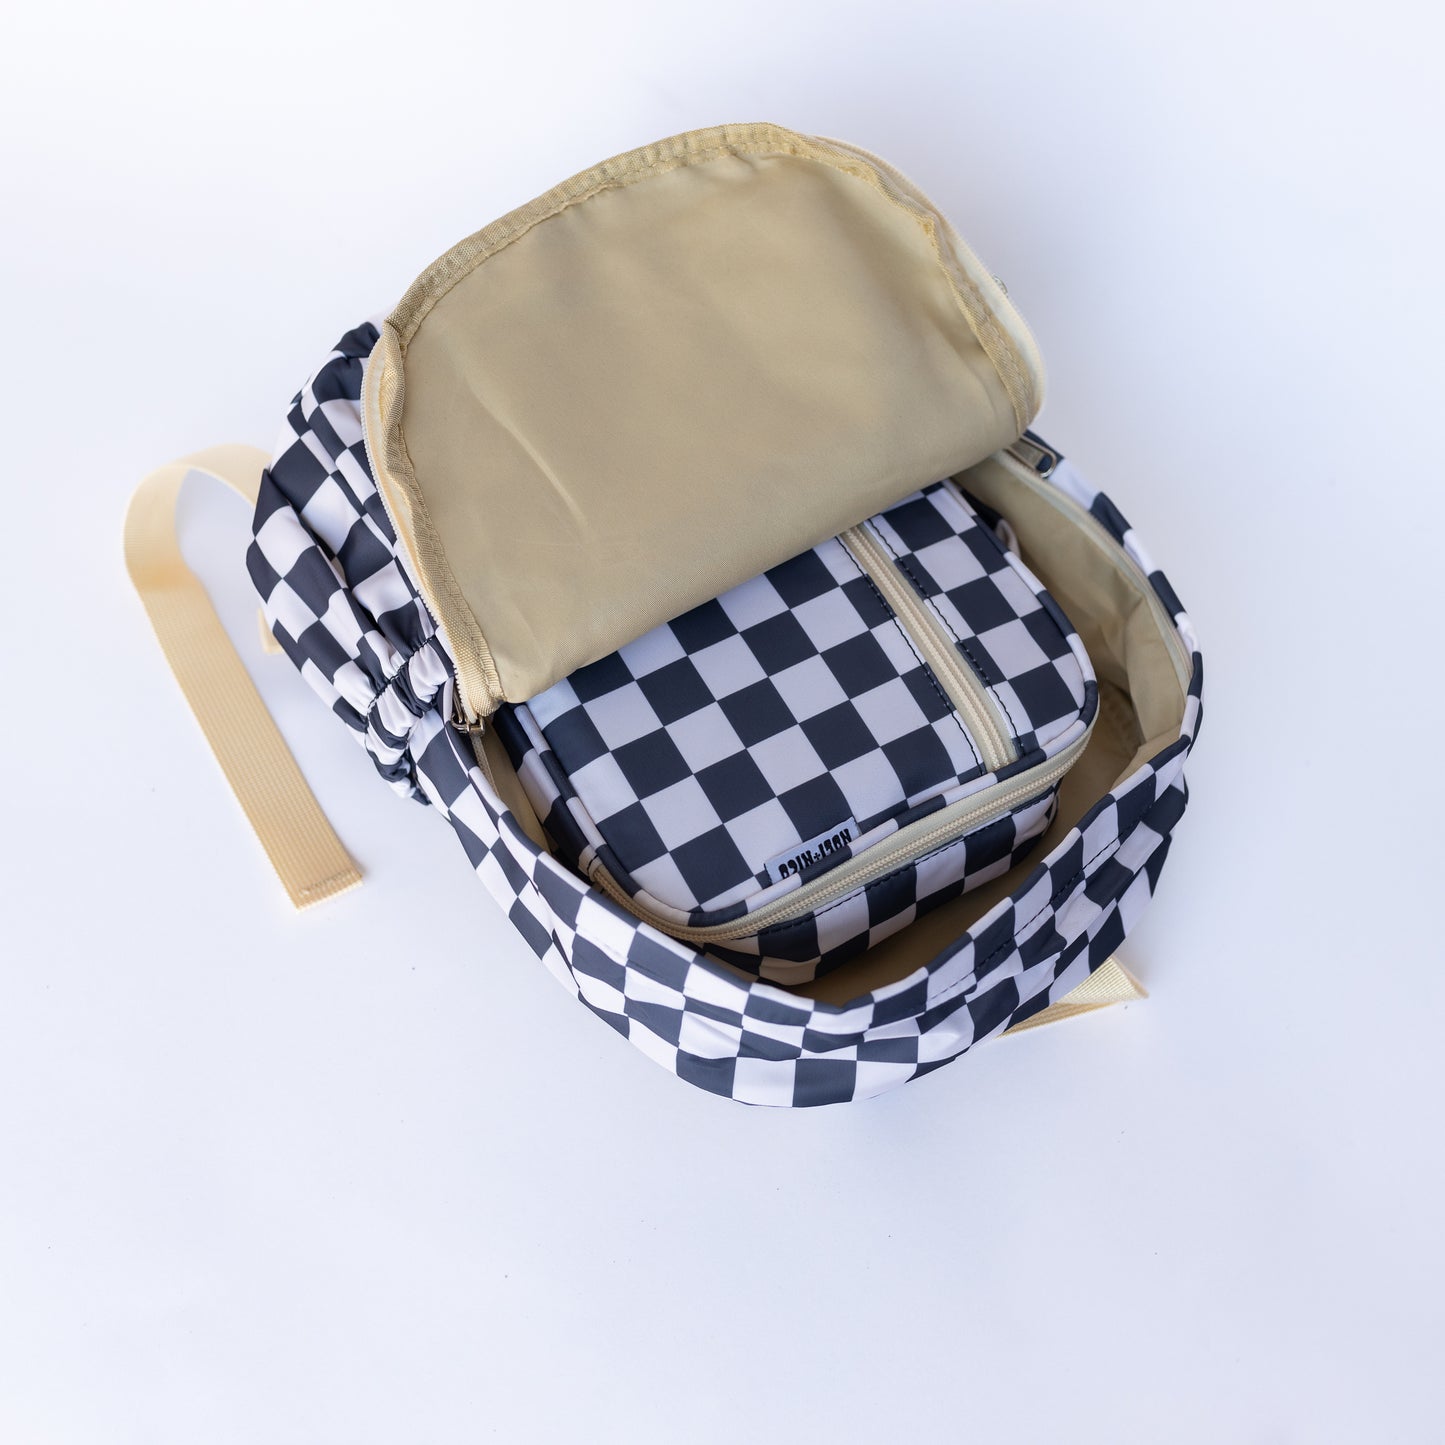 Mini Backpack || Checkered